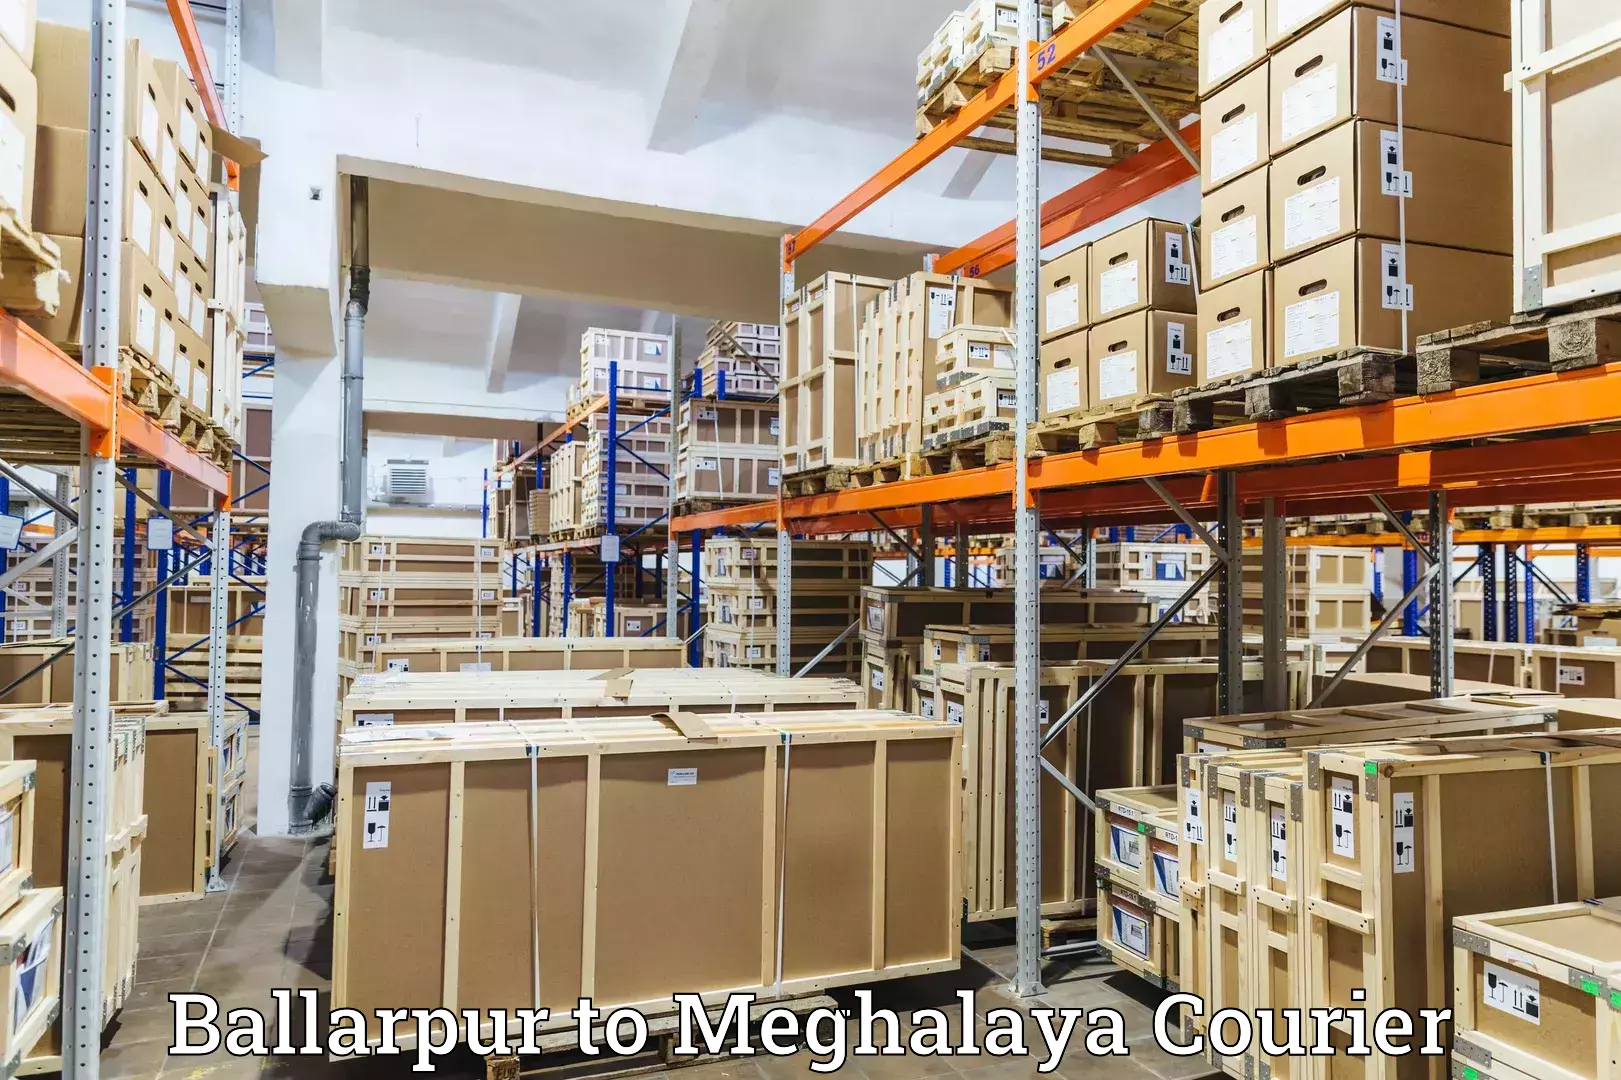 Courier membership in Ballarpur to Shillong